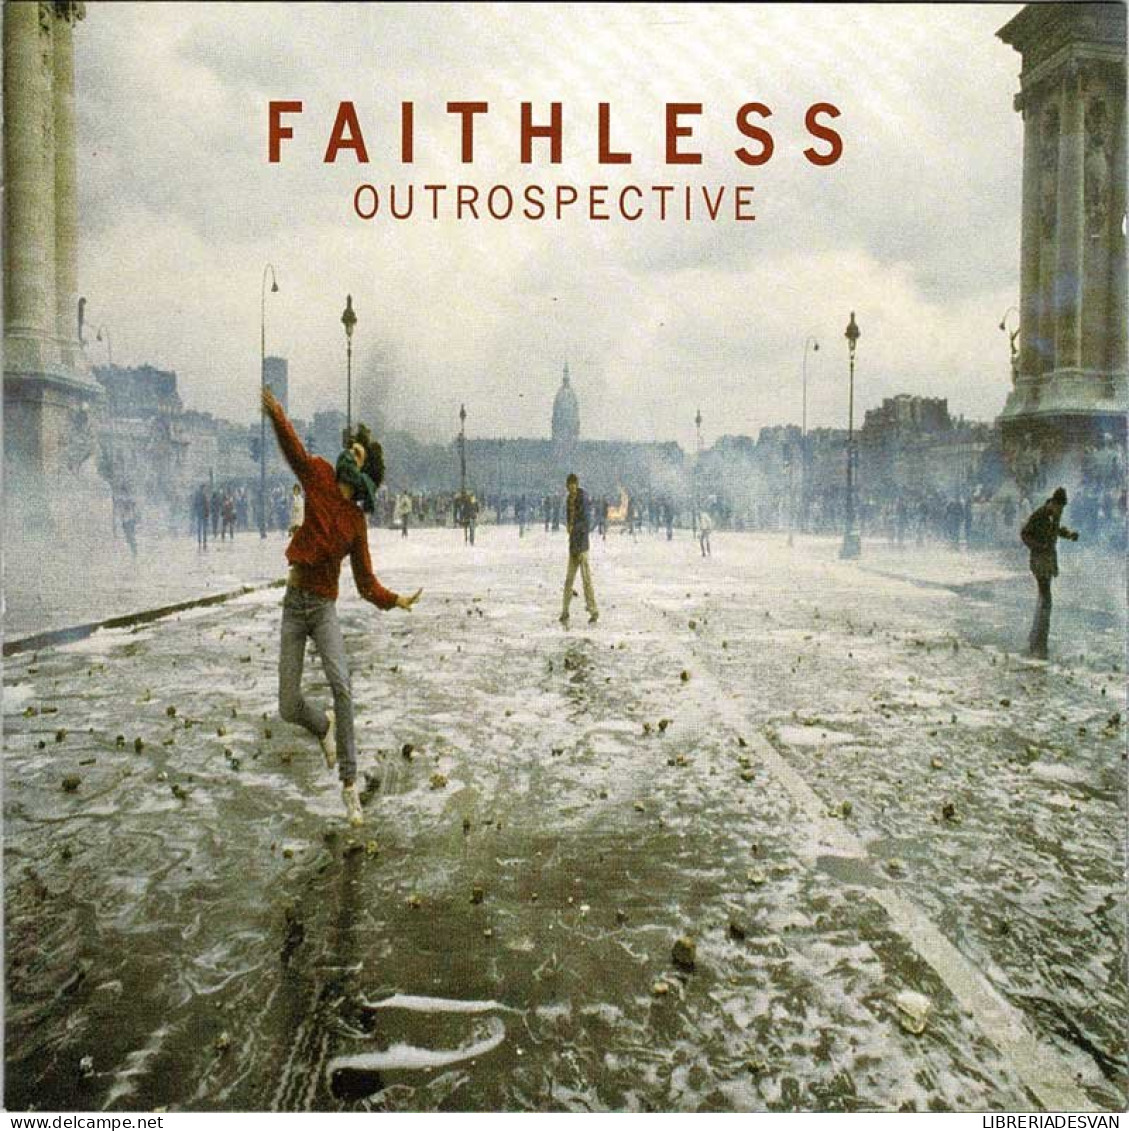 Faithless - Outrospective. CD - Dance, Techno & House